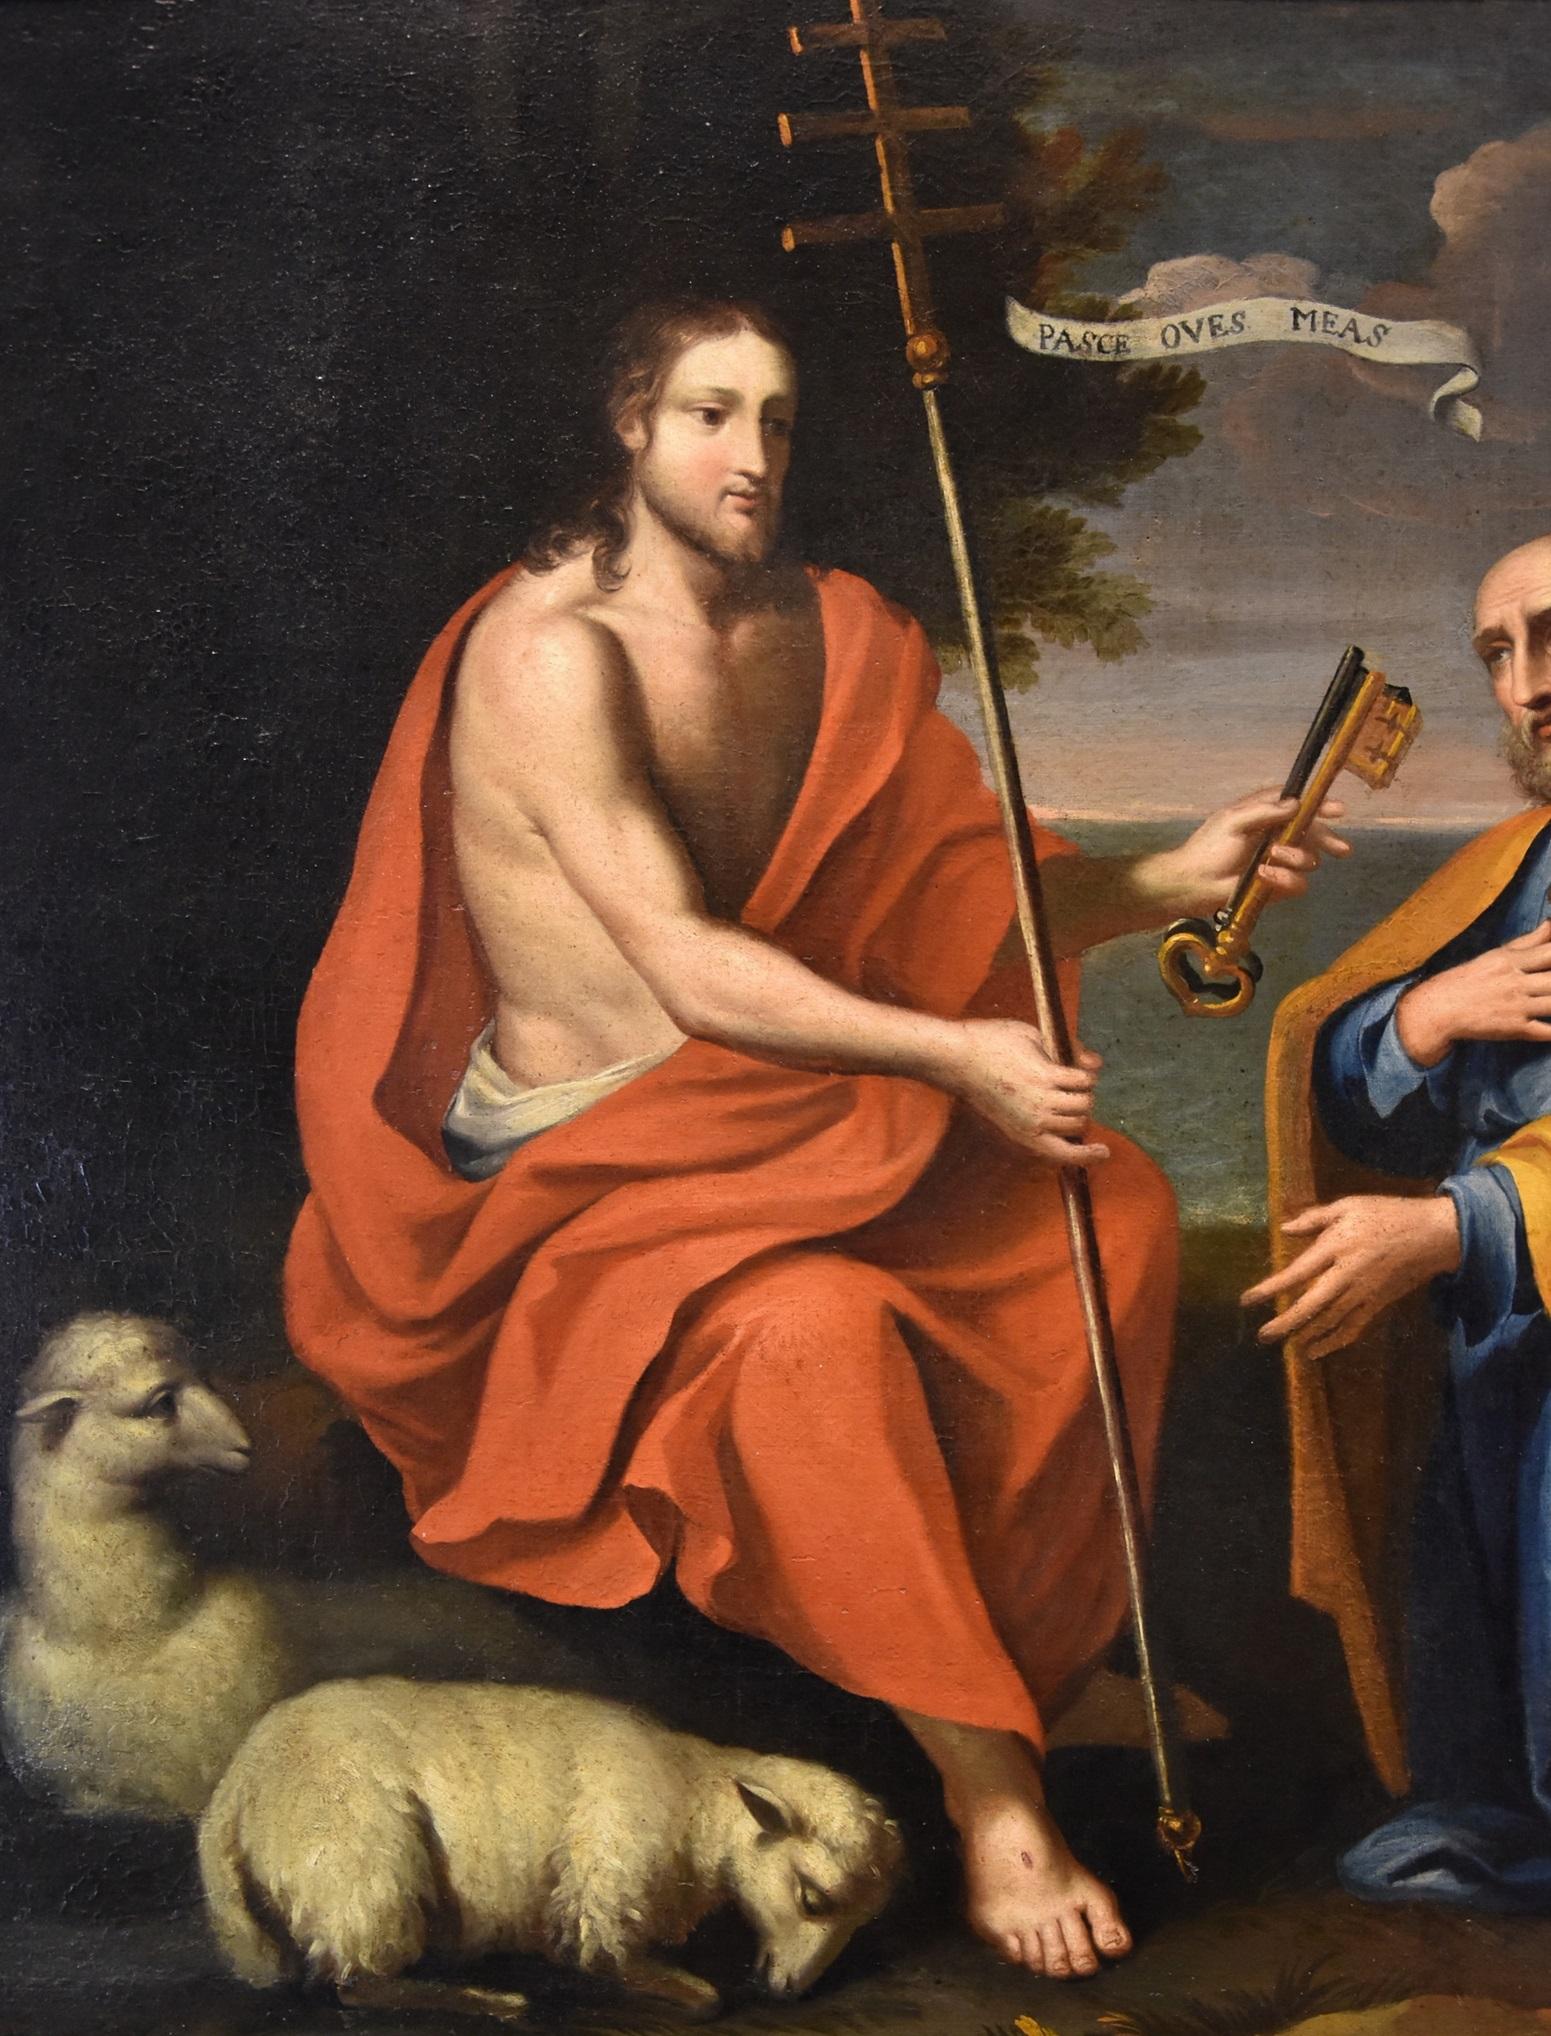 Paolo De Matteis (Neapel, 1662 - Neapel, 1728) wird zugeschrieben
Christus übergibt dem heiligen Petrus die Schlüssel (Schlüsselübergabe)

Öl auf Leinwand
88 x 138 cm / Gerahmt 98 x 149 cm.

Das vorgeschlagene Gemälde ist das Werk eines